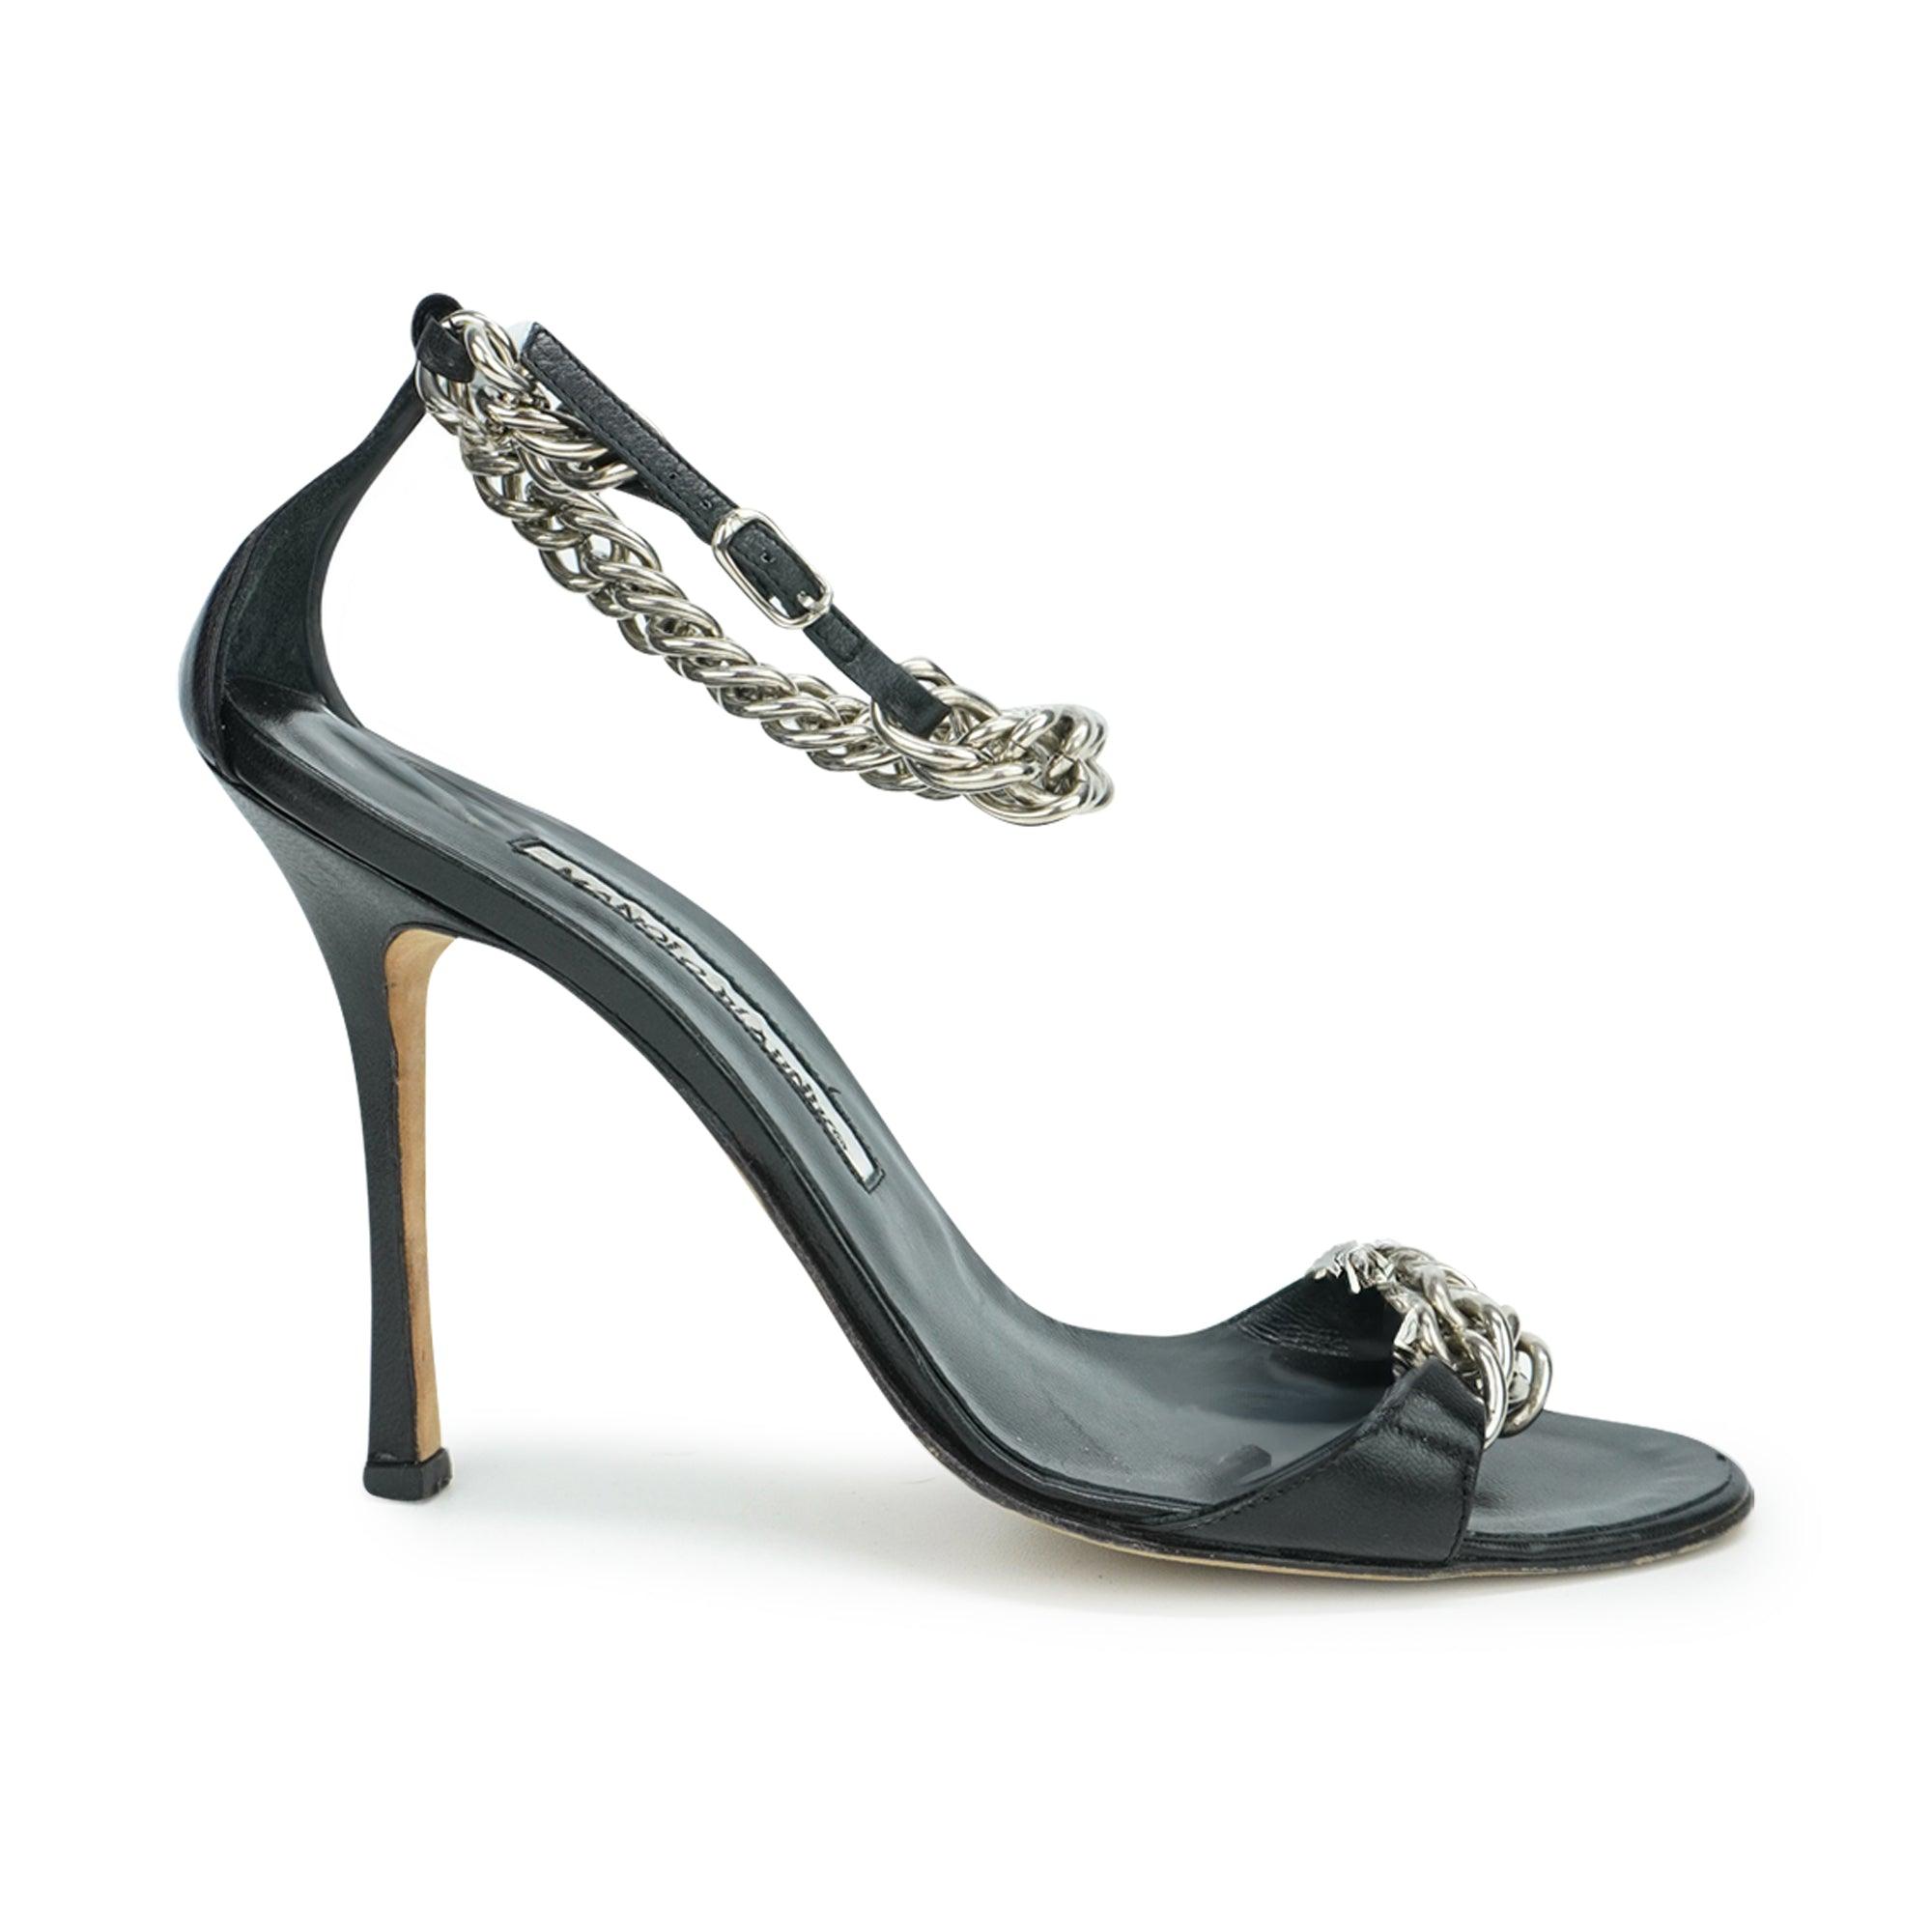 Manolo Blahnik Heels - Women's 37 - Fashionably Yours